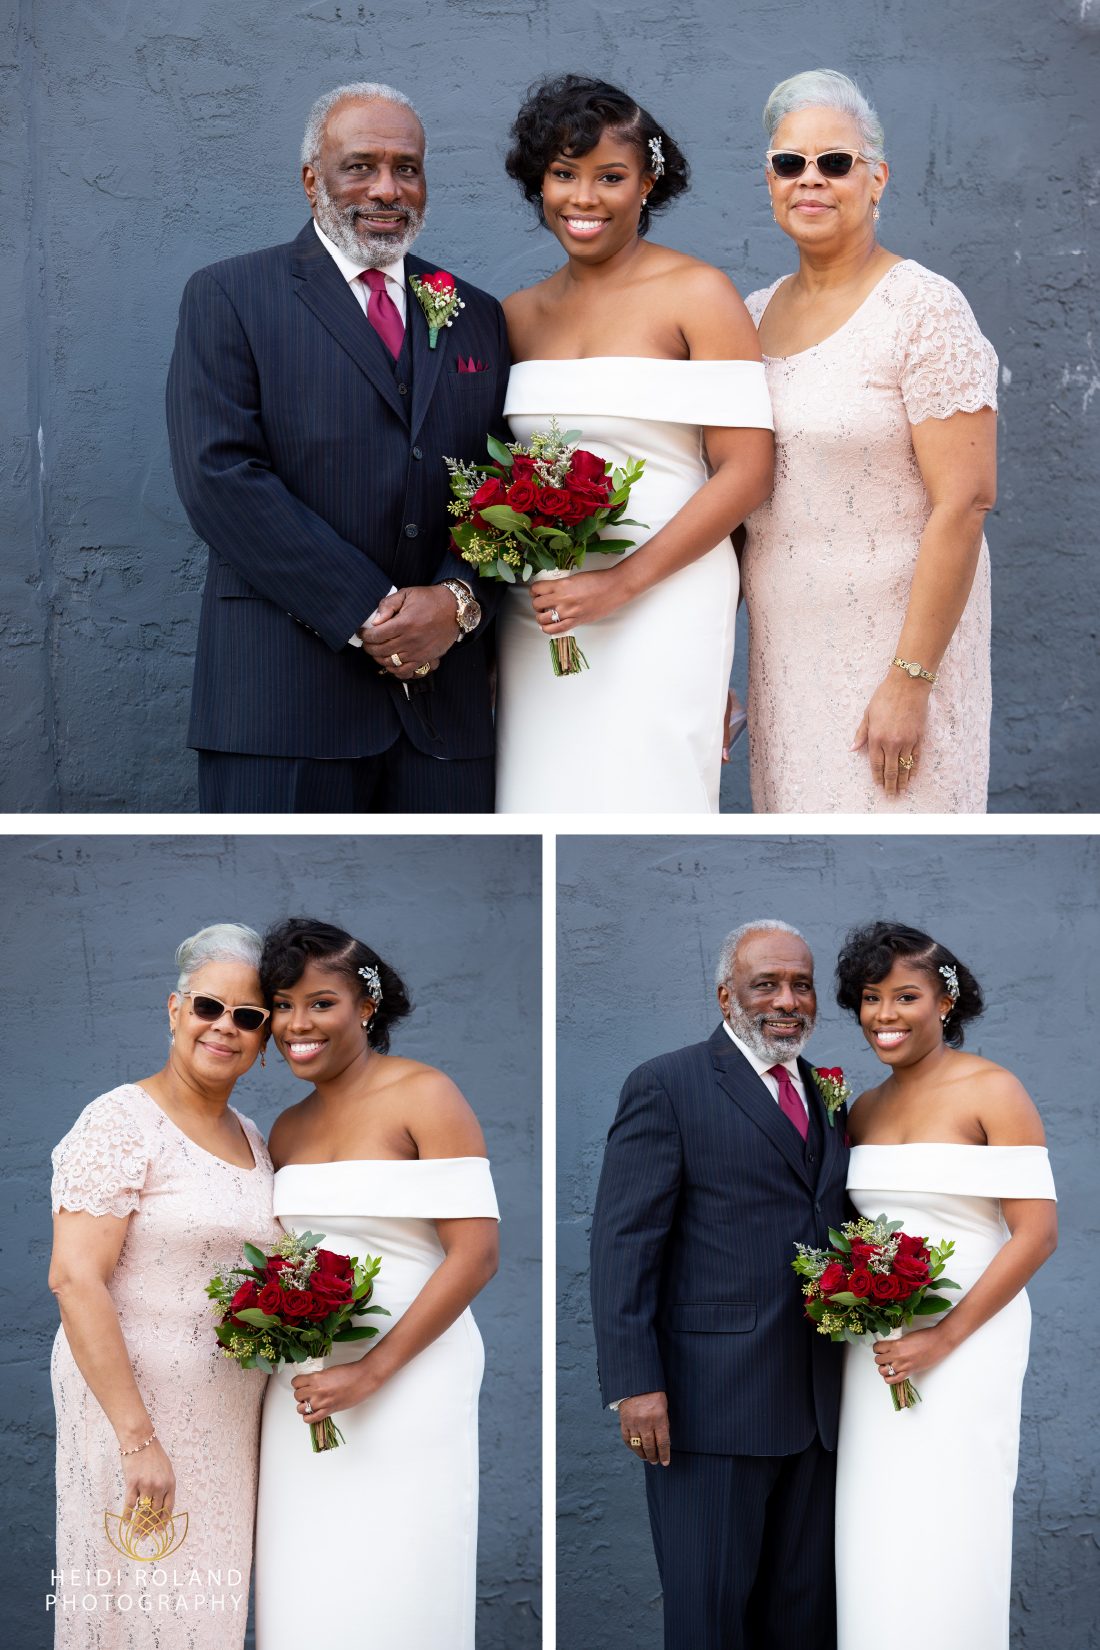 Family photos on wedding day in Philadelphia